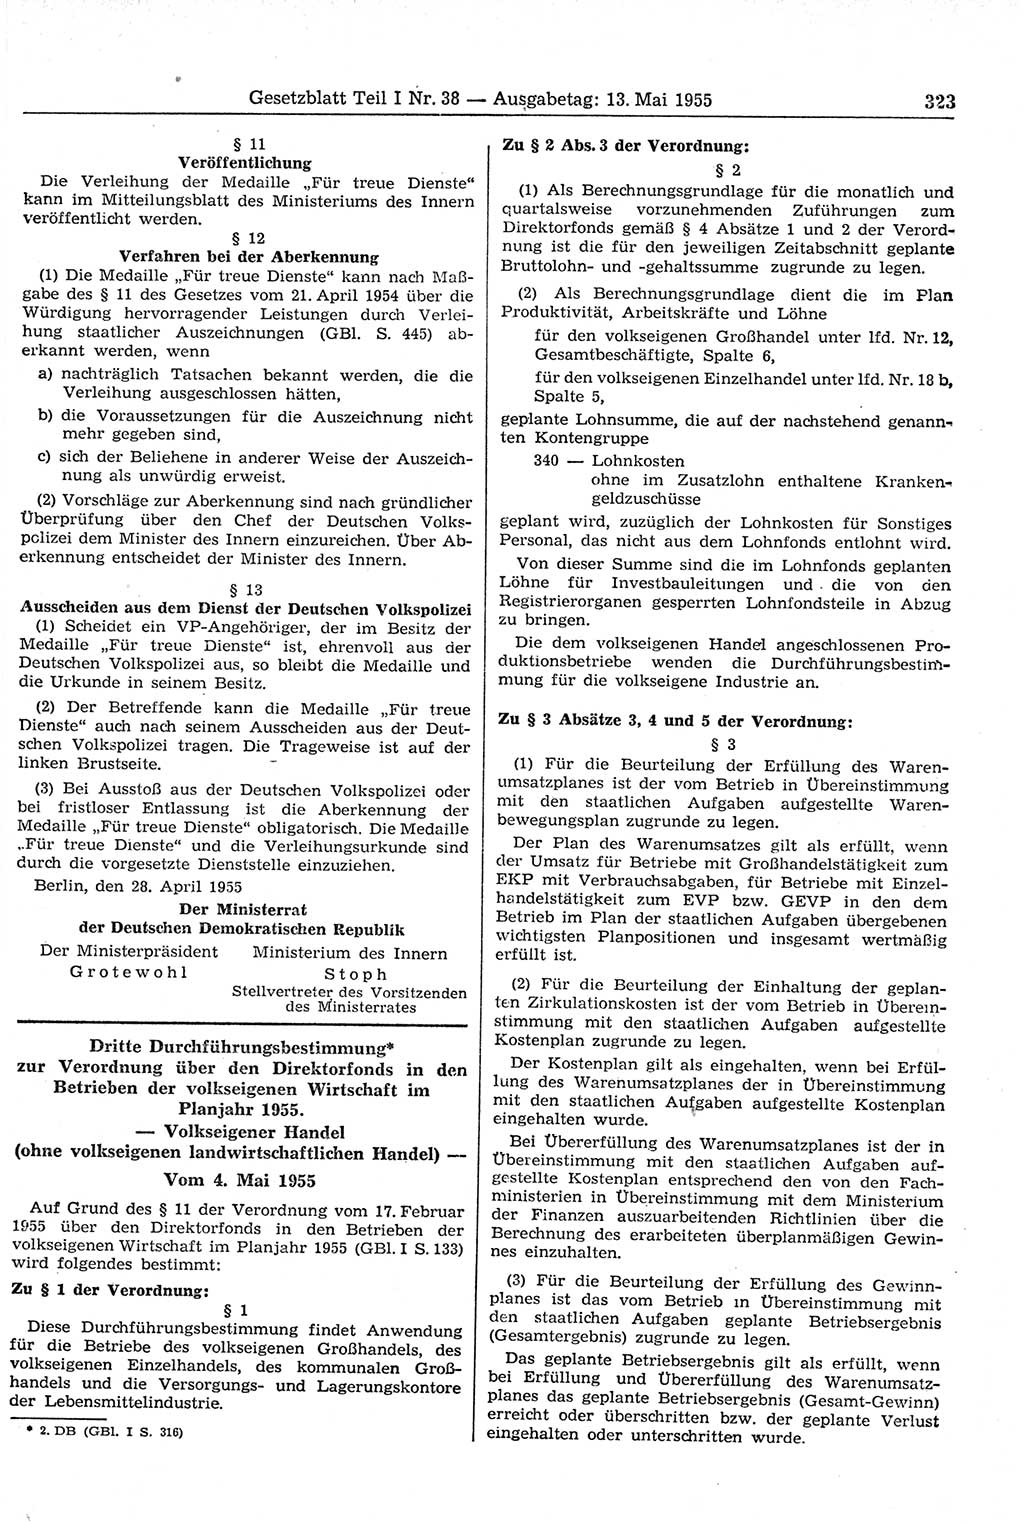 Gesetzblatt (GBl.) der Deutschen Demokratischen Republik (DDR) Teil Ⅰ 1955, Seite 323 (GBl. DDR Ⅰ 1955, S. 323)